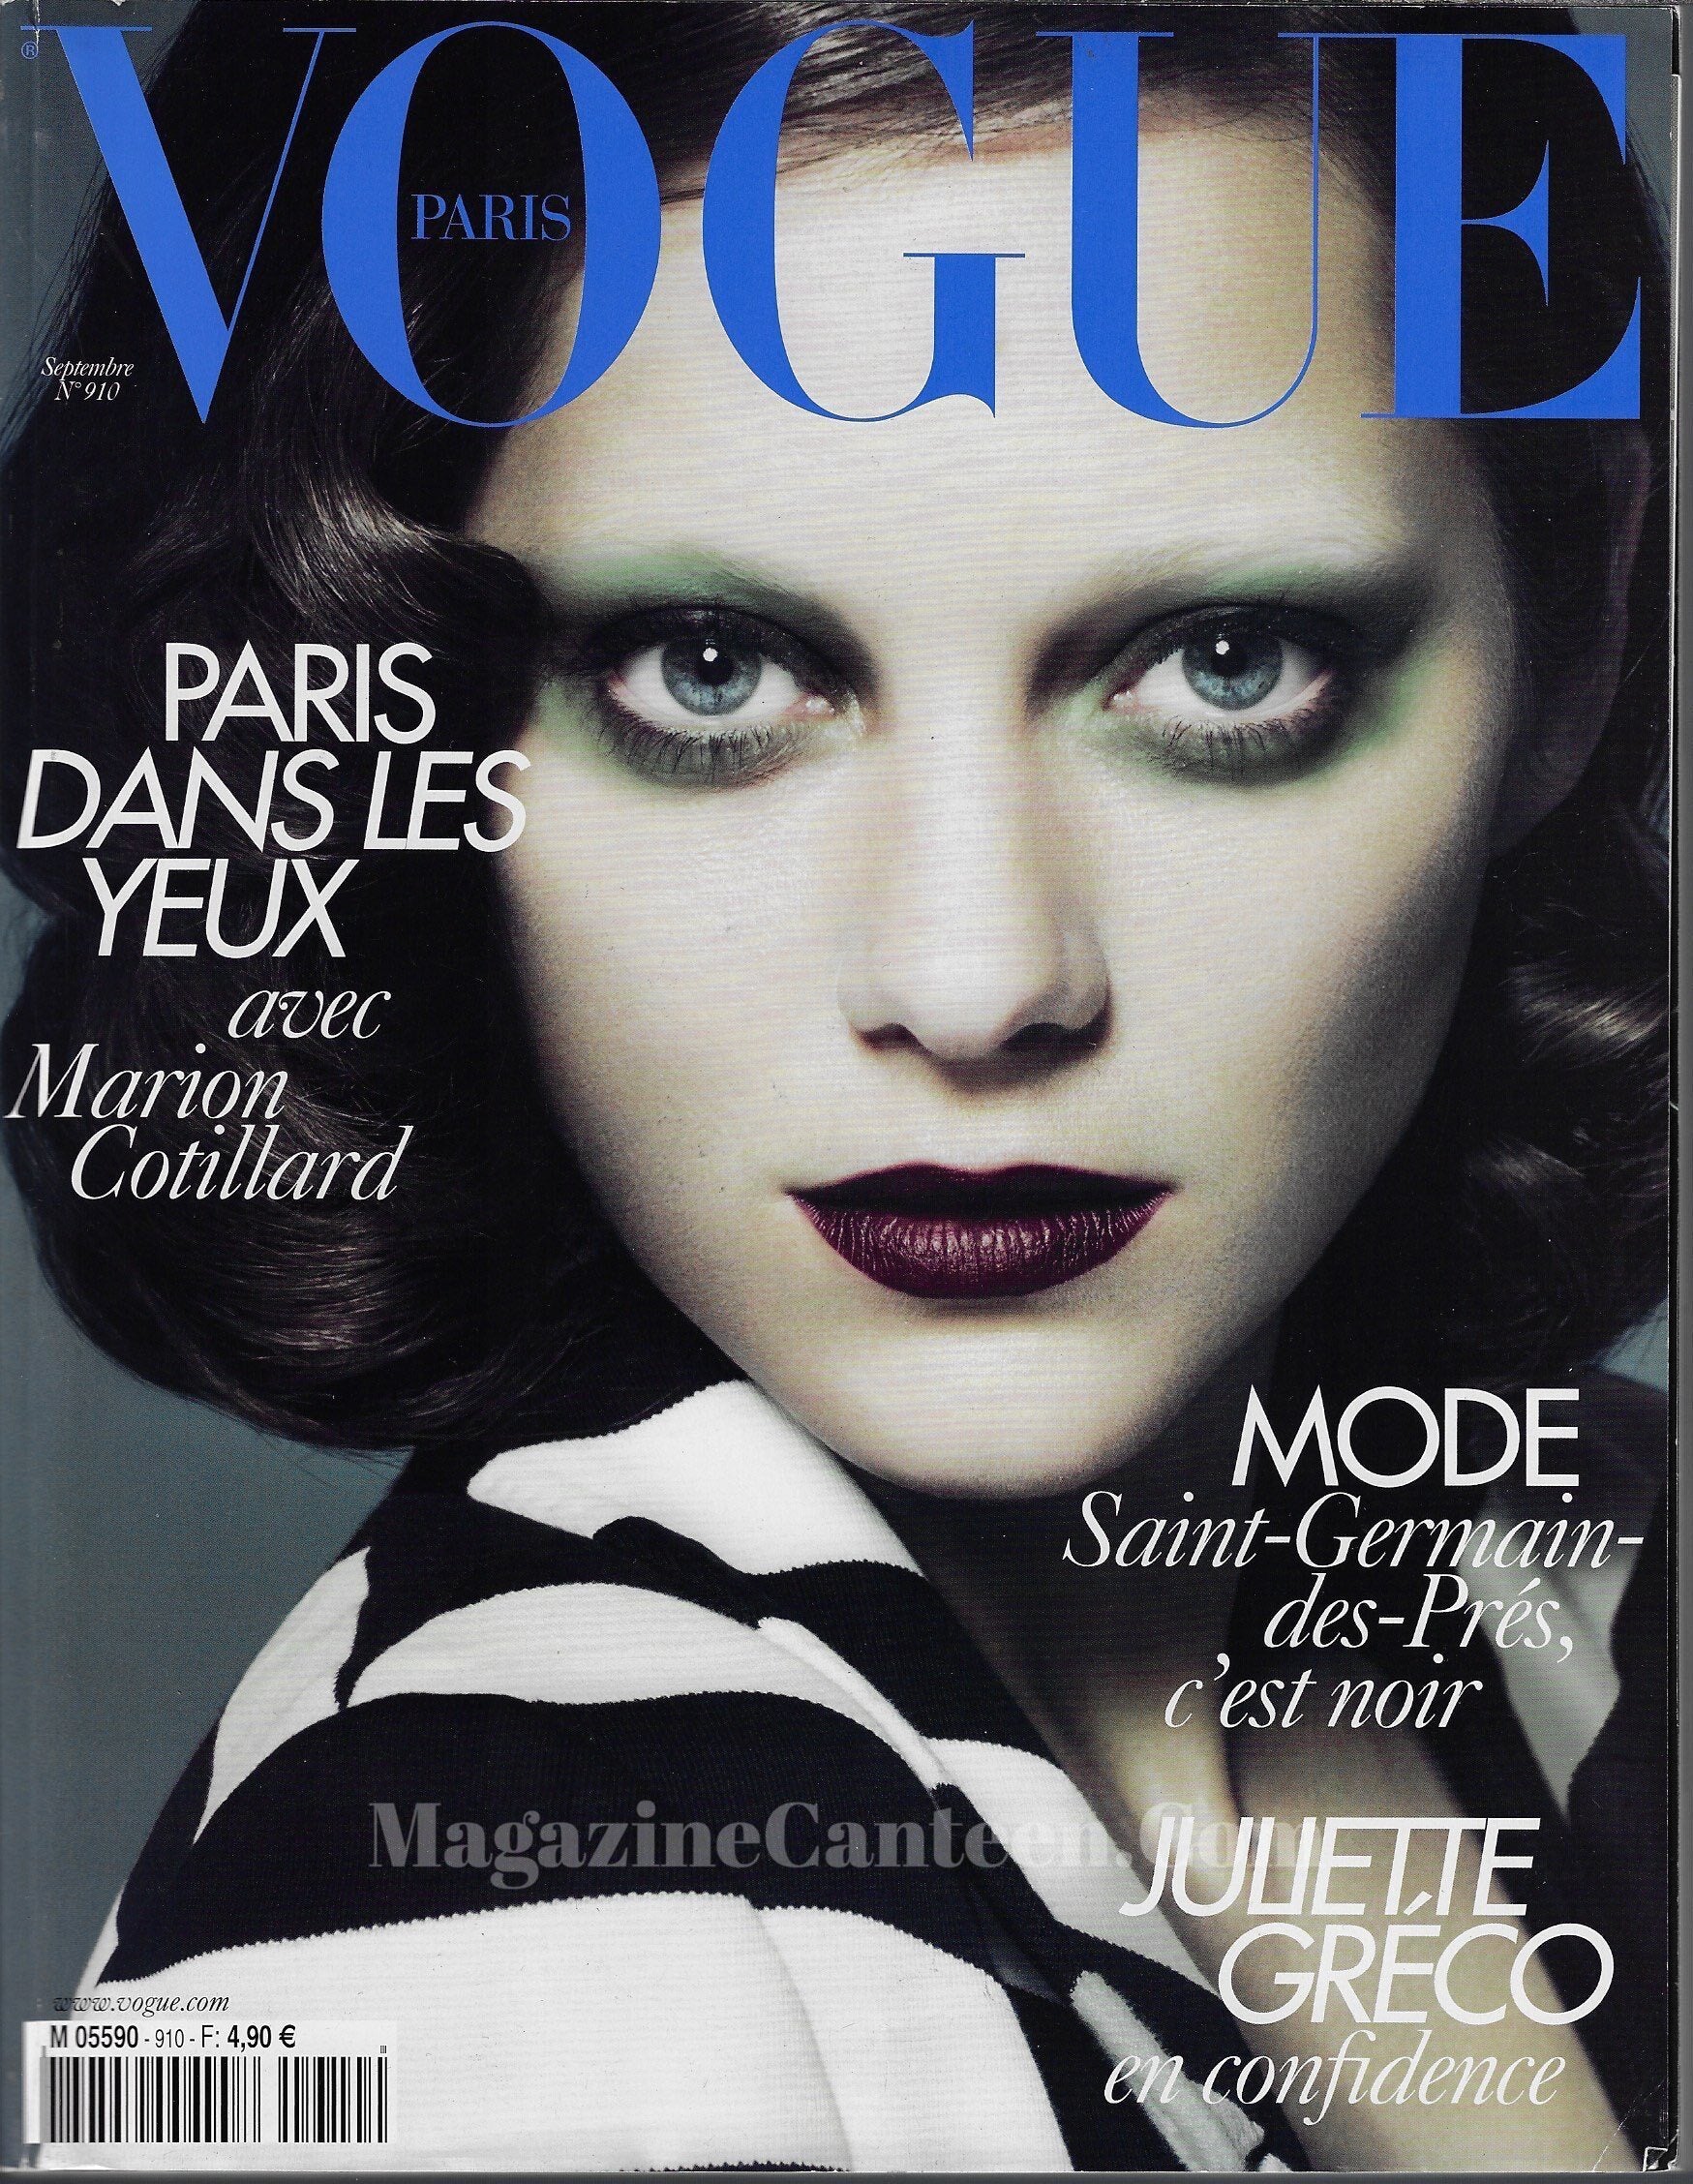 Vogue Paris Magazine 2010 - Marion Cotillard Jamie Dornan